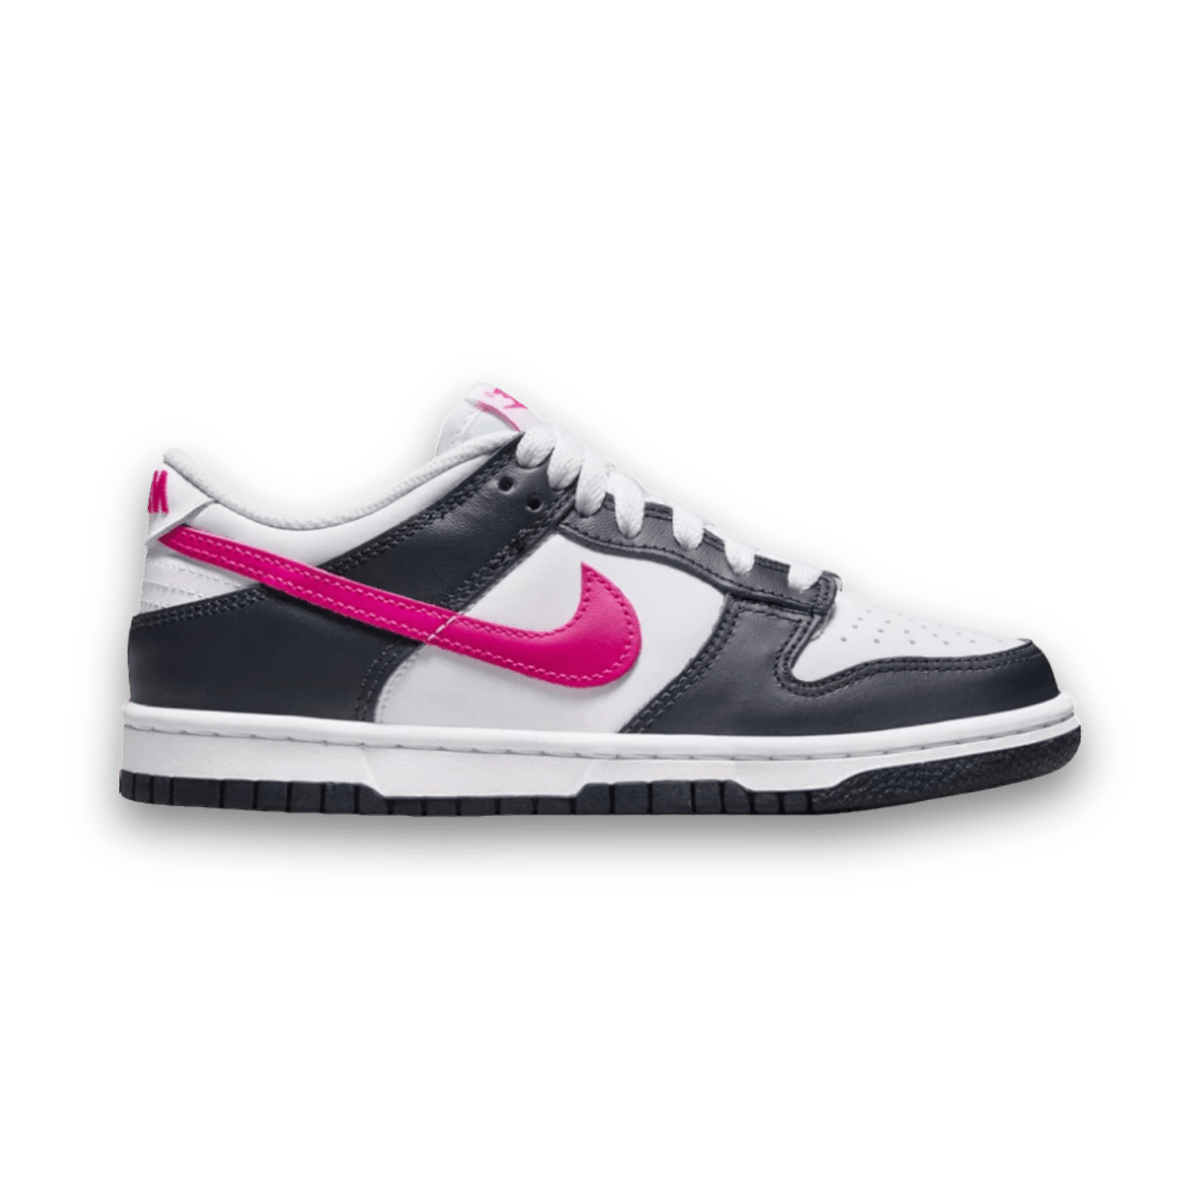 Dunk Low 'Obsidian Fierce Pink' - Grade School - Low Sneaker - Jawns on Fire Sneakers & Streetwear